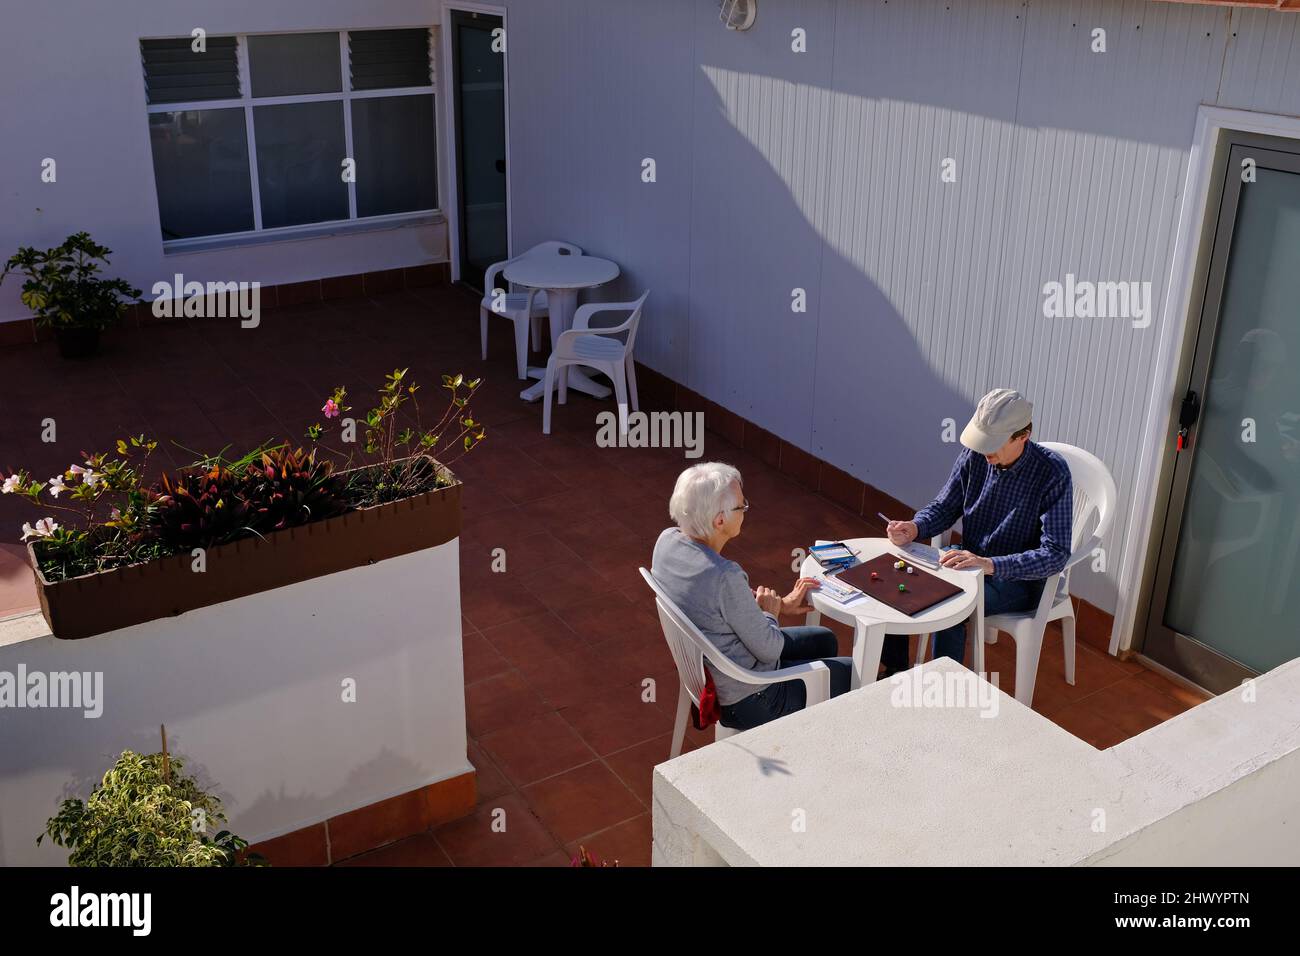 Deux personnes plus âgées jouent à un jeu de dés dans un hôtel. Banque D'Images